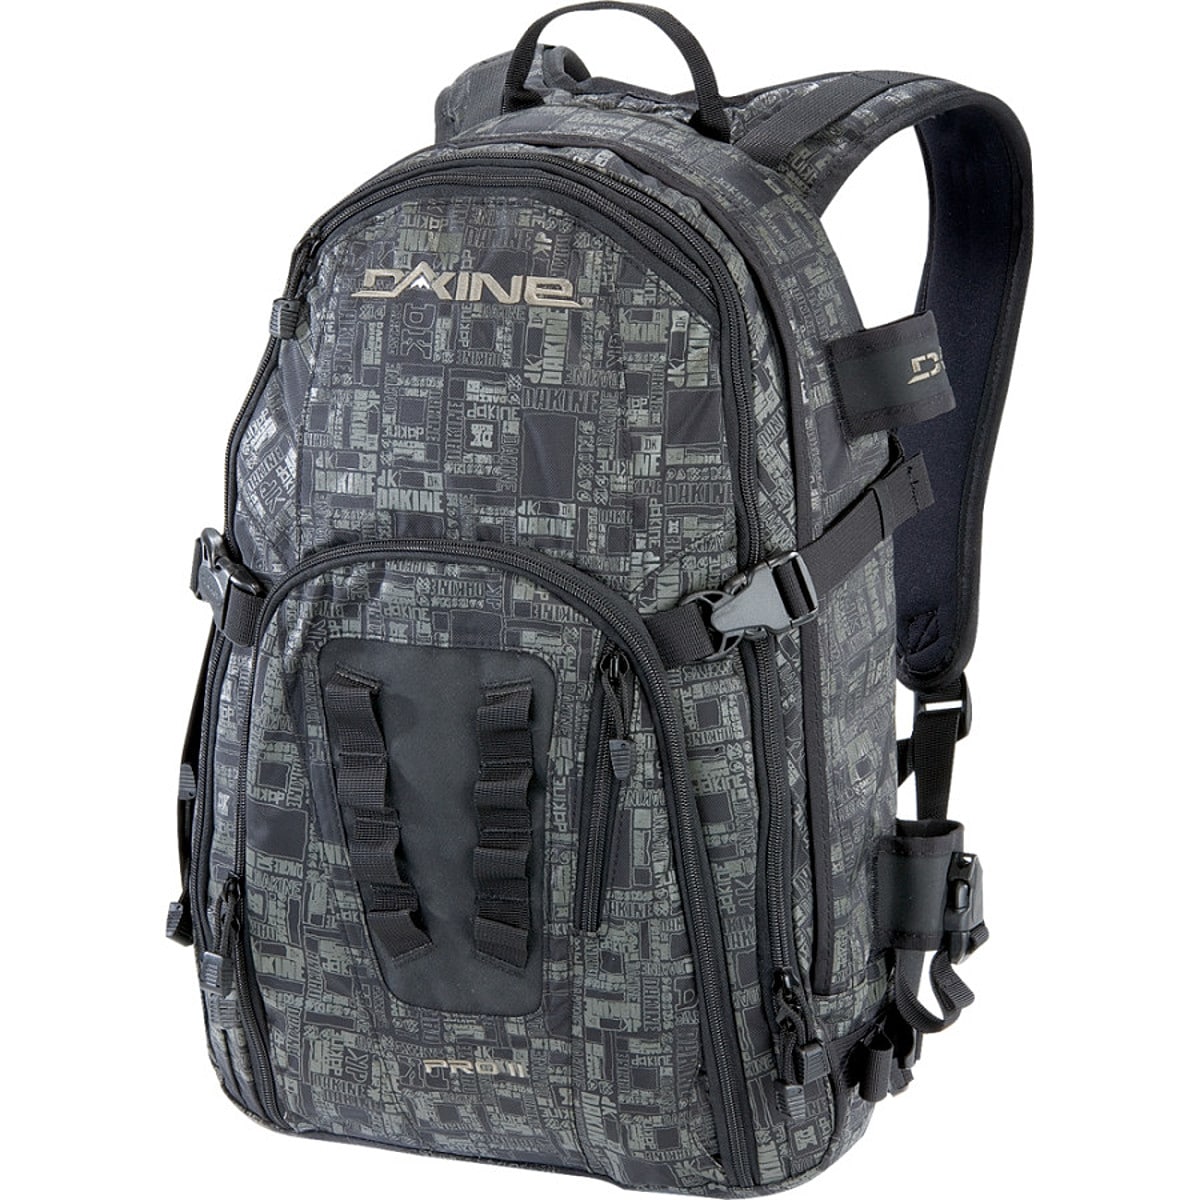 ouder ik ga akkoord met echo DAKINE Pro 2 Backpack - 1600cu in - Ski